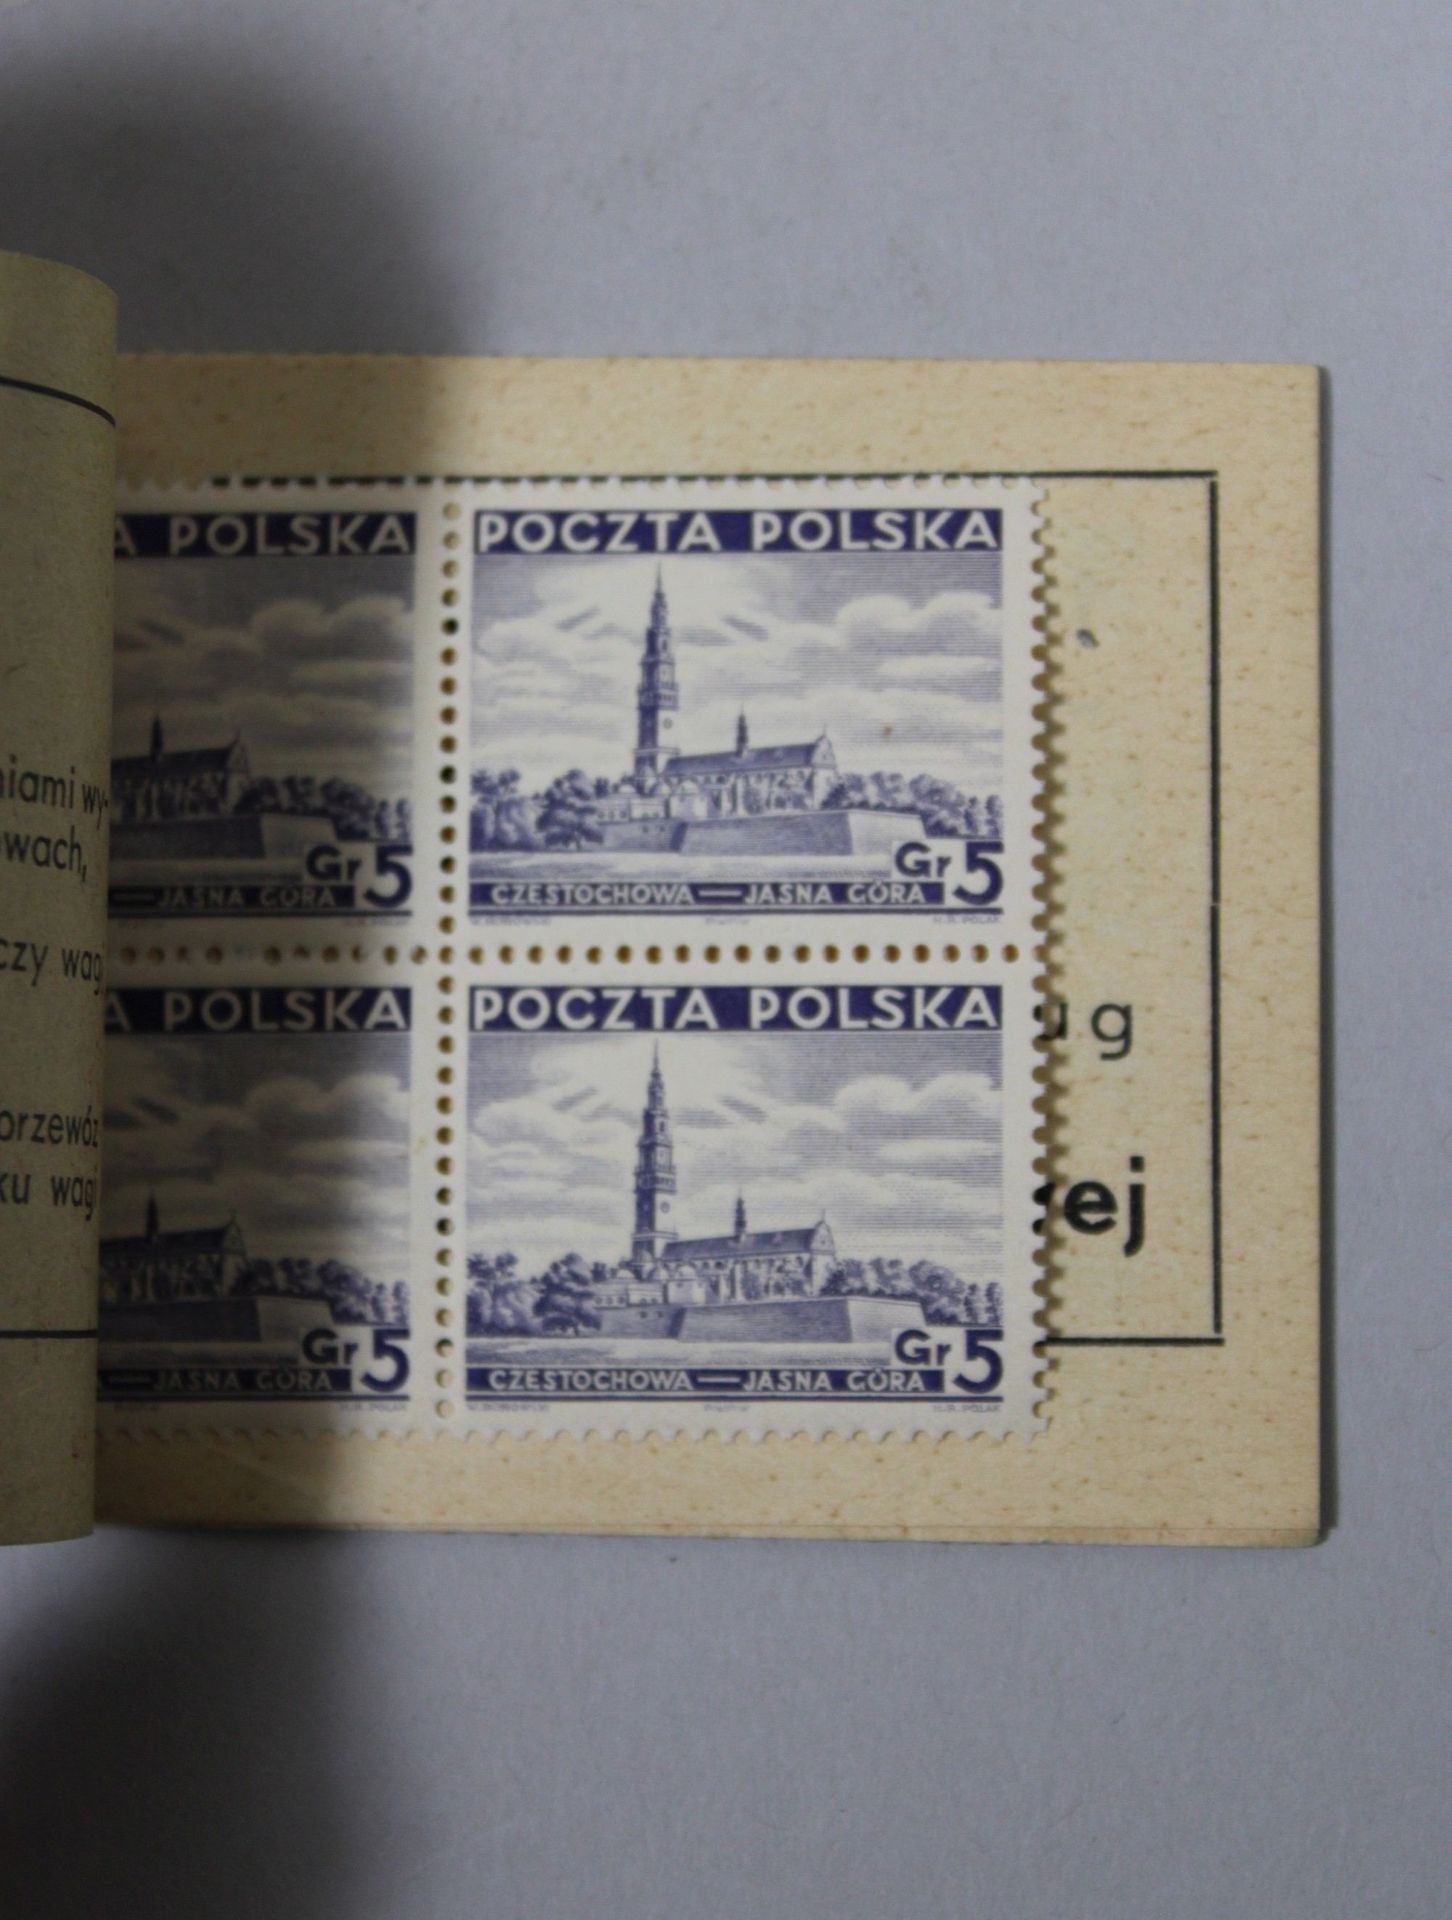 16 Briefmarkenhefte, Polen, 1938, vollständig, guter Zustand. - Bild 3 aus 3